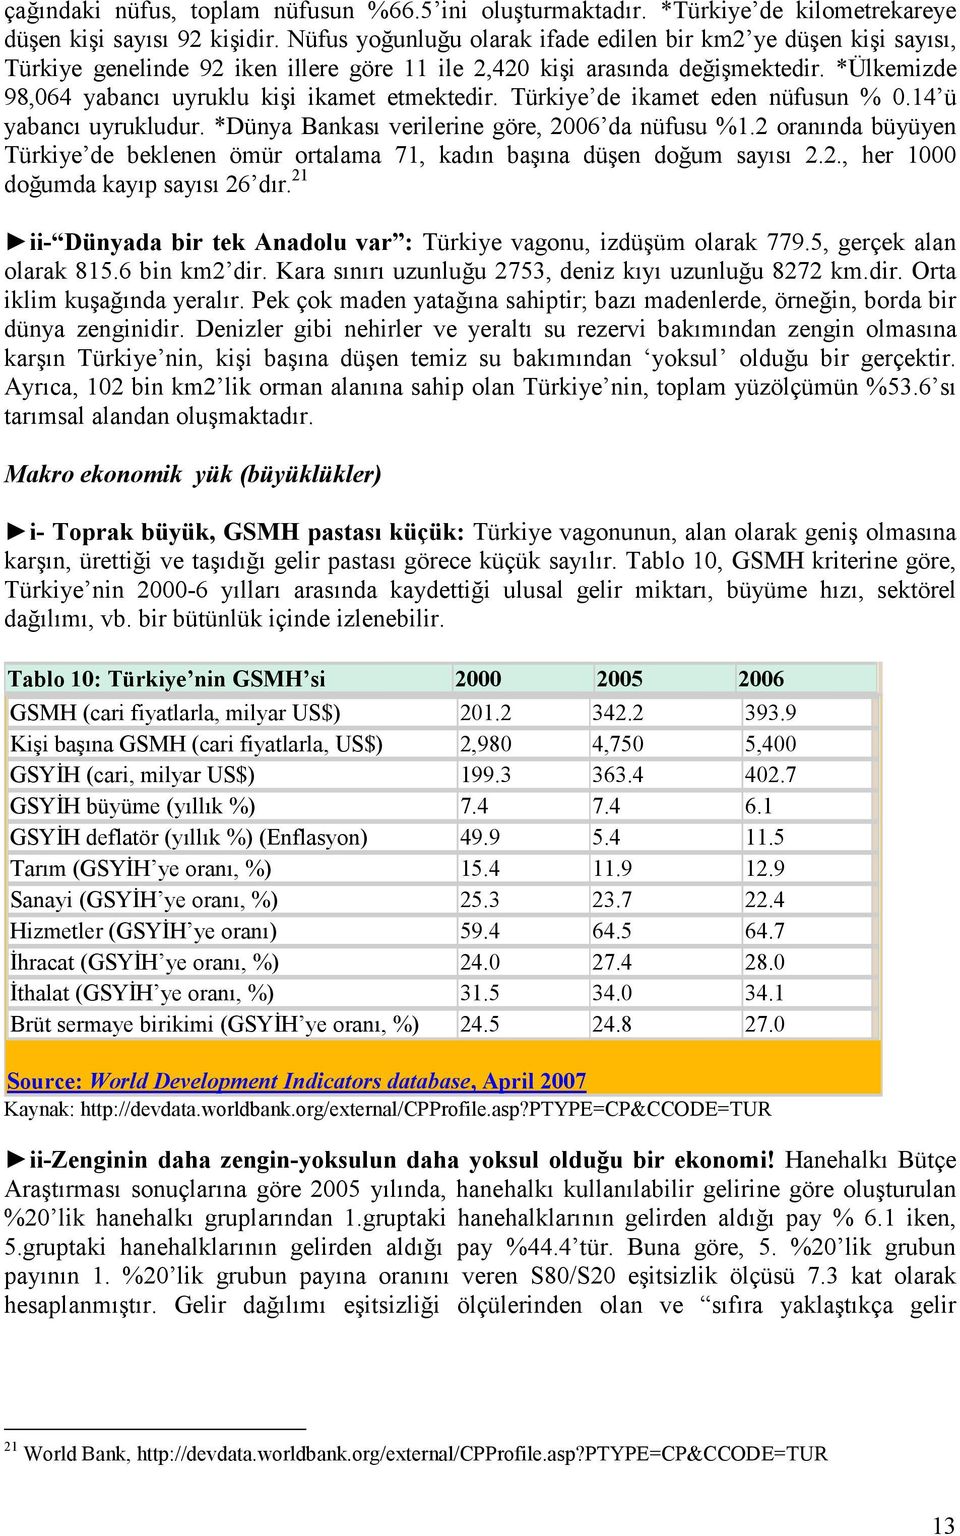 *Ülkemizde 98,064 yabancı uyruklu kişi ikamet etmektedir. Türkiye de ikamet eden nüfusun % 0.14 ü yabancı uyrukludur. *Dünya Bankası verilerine göre, 2006 da nüfusu %1.